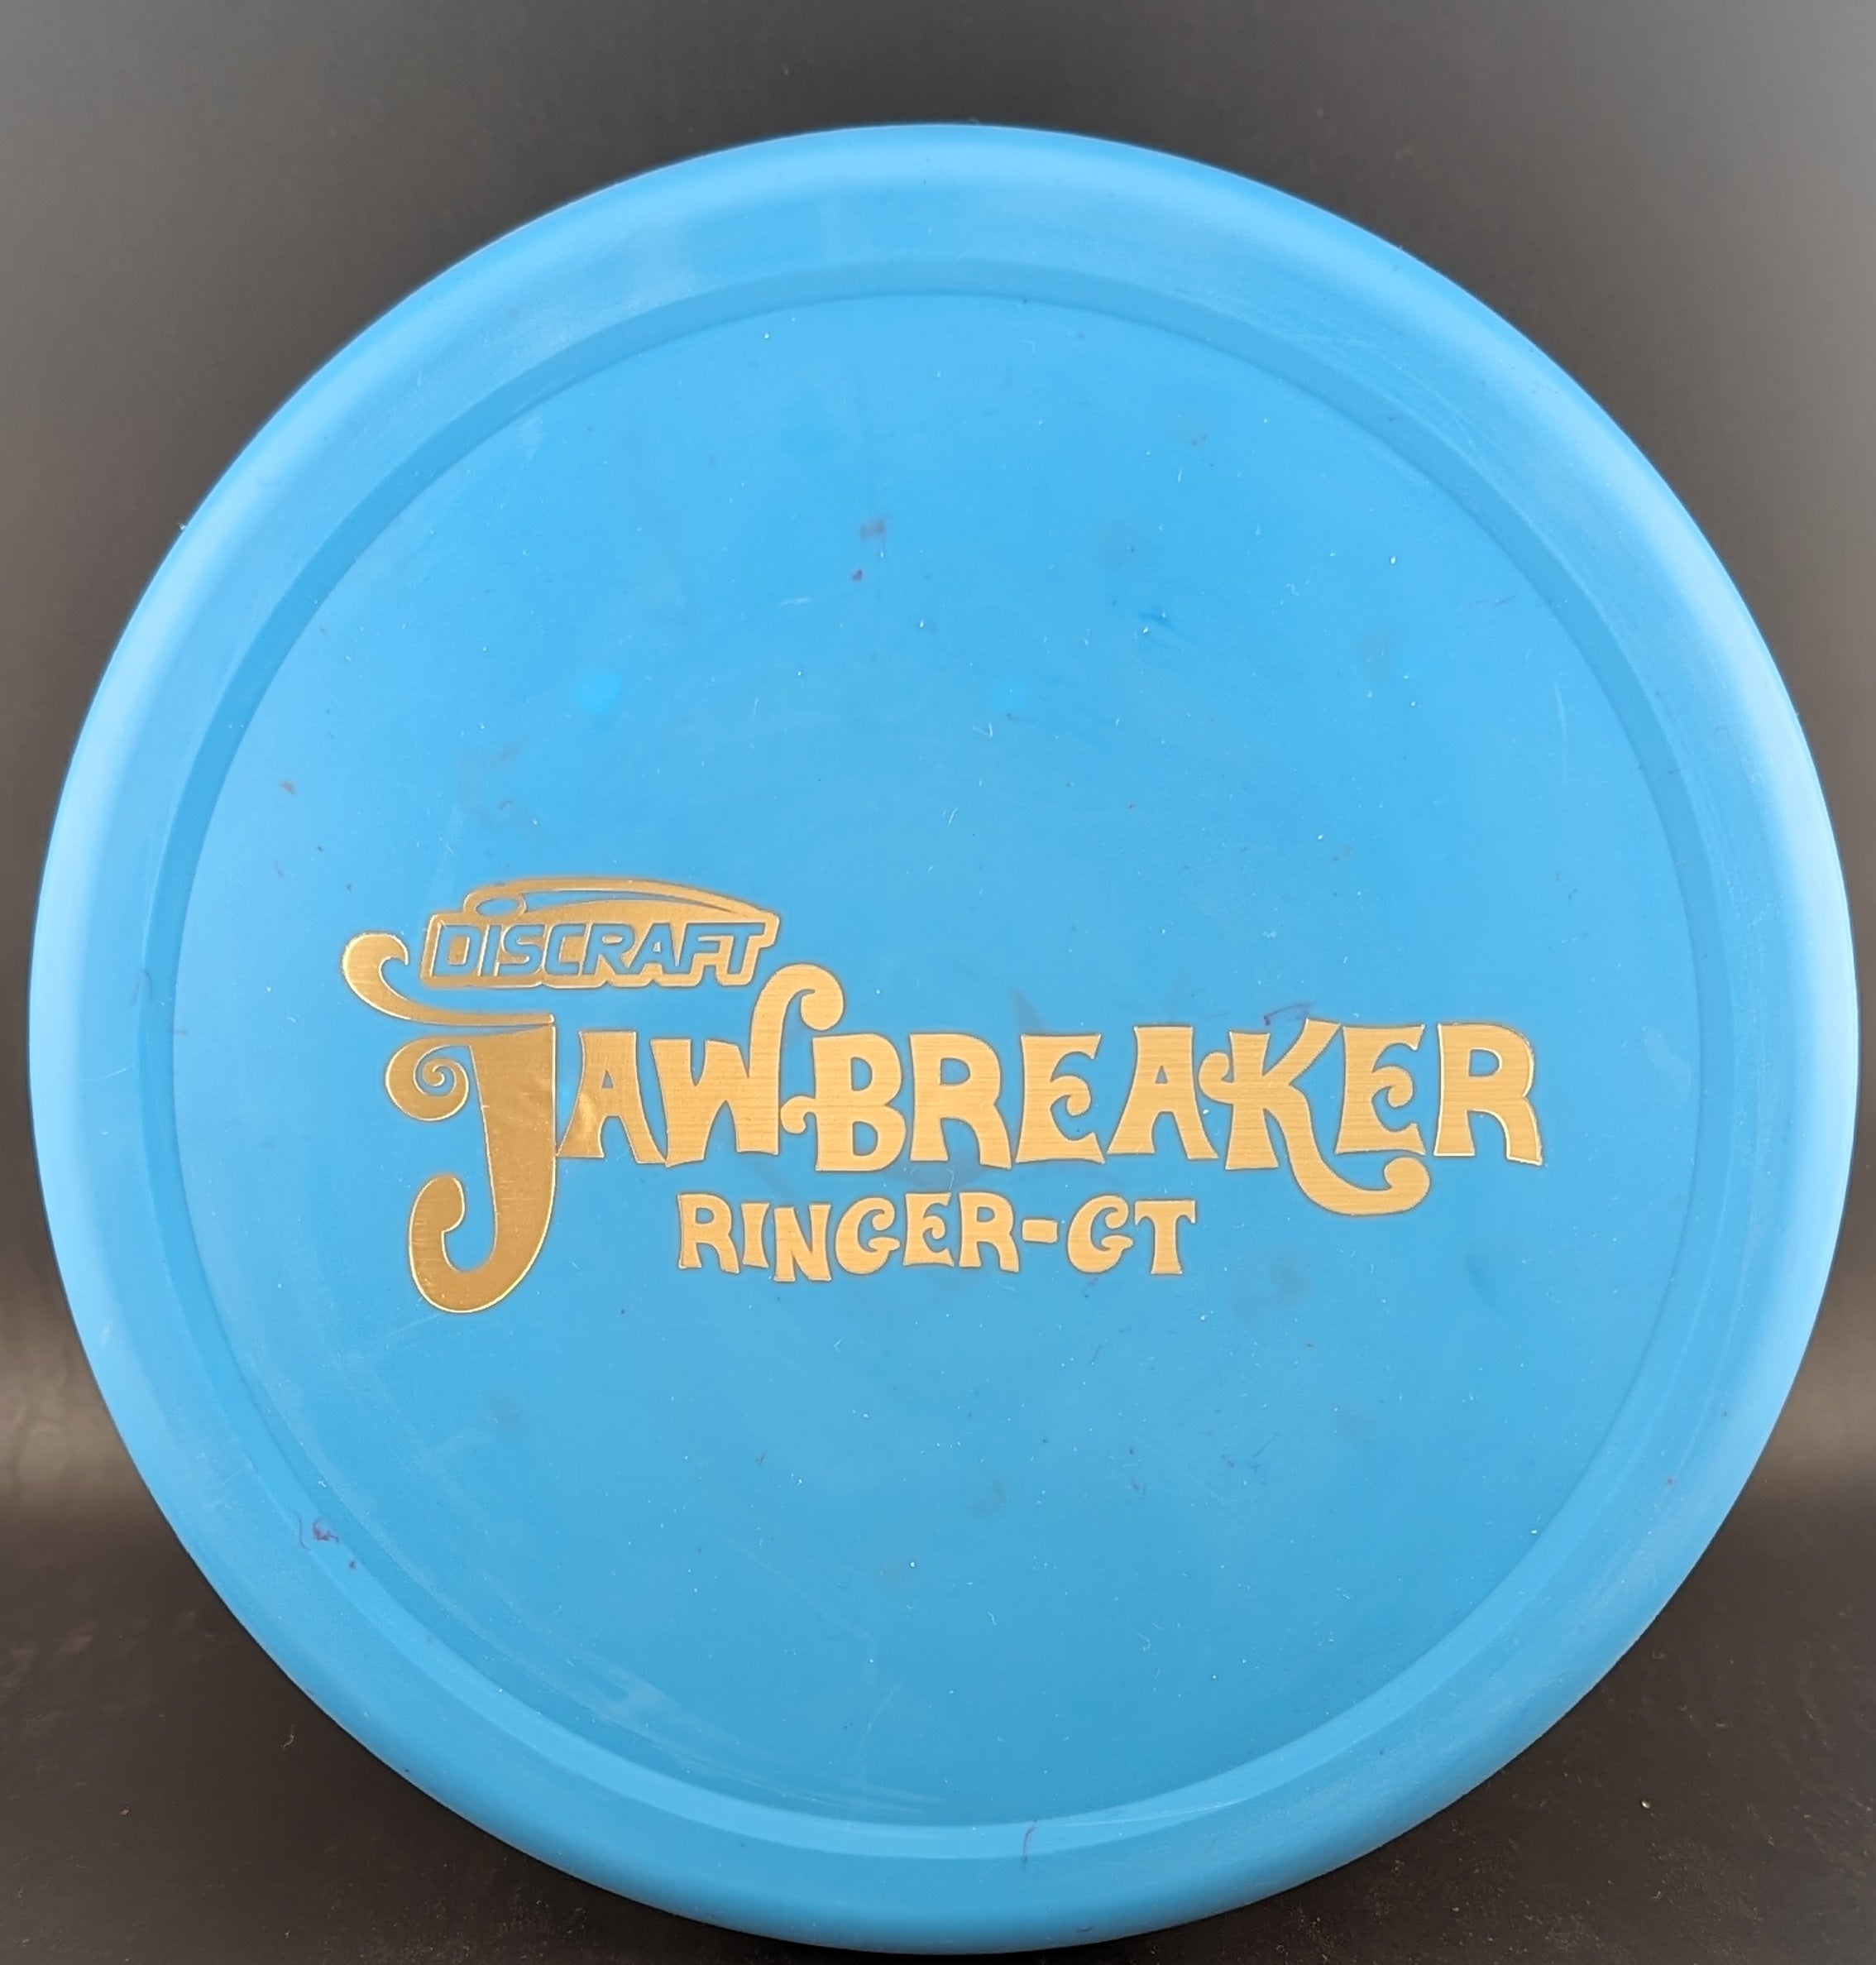 Jawbreaker Ringer GT - 0